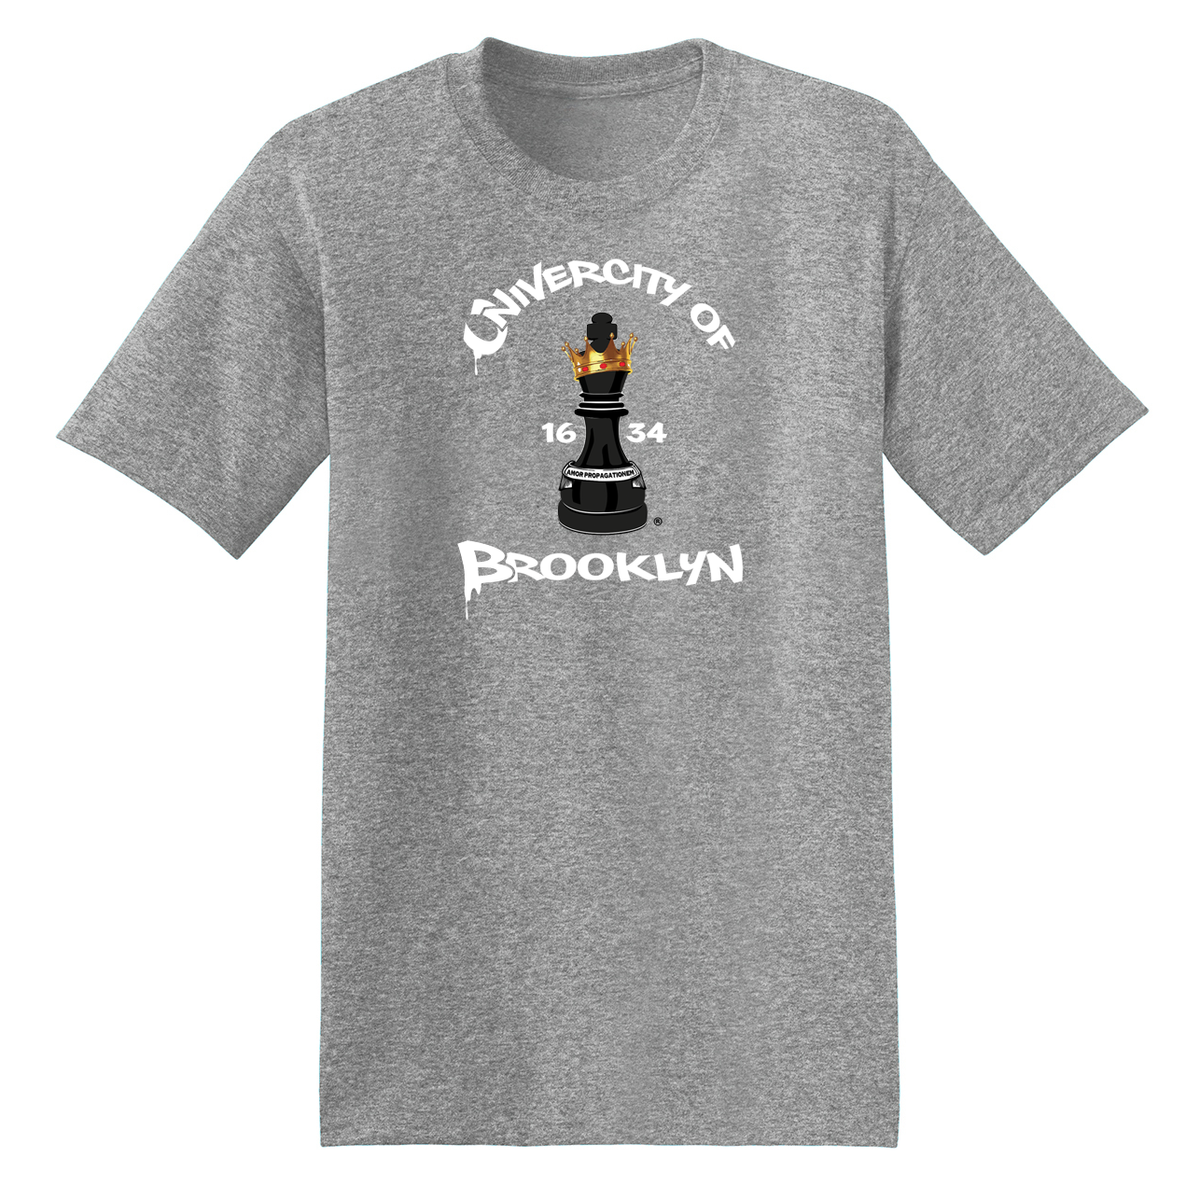 UniverCity of Brooklyn T-Shirt